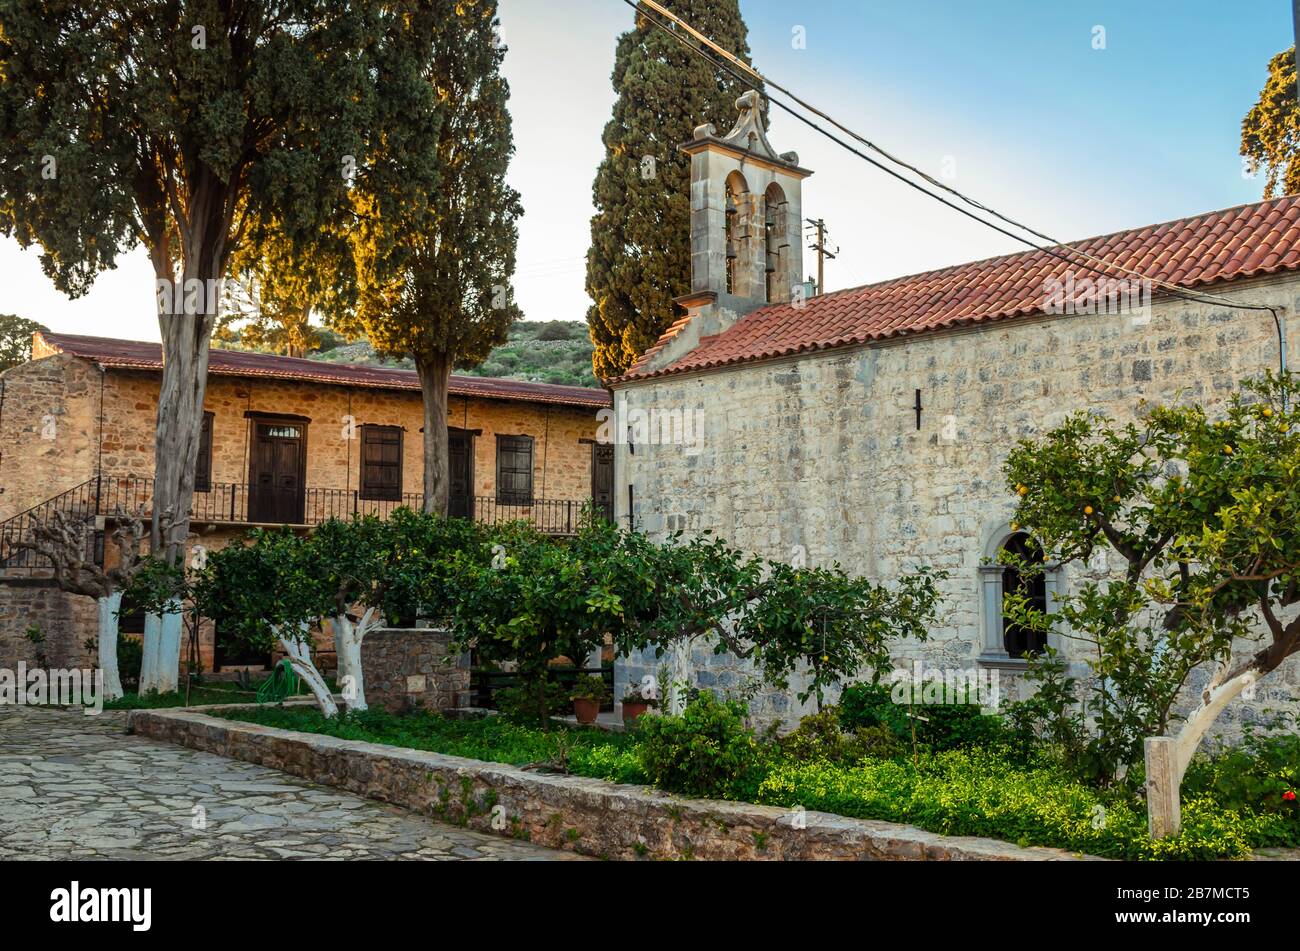 El monasterio de Areti es uno de los hermosos monasterios cretenses.It está situado junto al pueblo de Karydi en una zona aislada de la provincia de Mirabello. Foto de stock